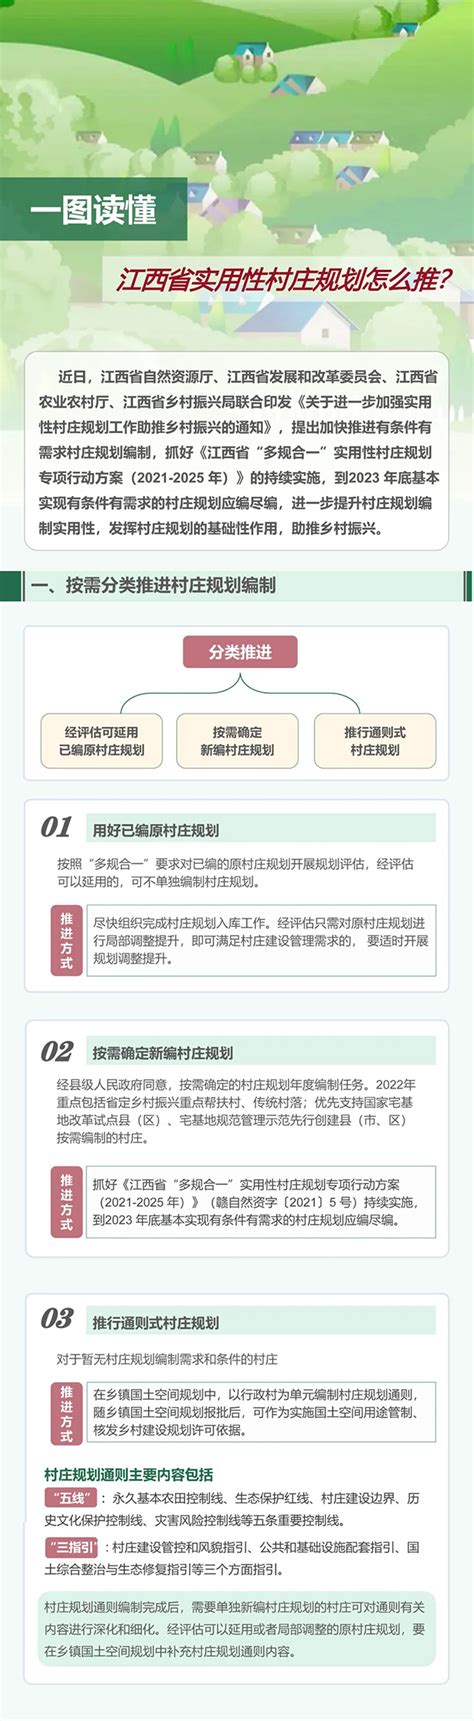 百善镇张庄村村庄规划公示_濉溪县人民政府信息公开网